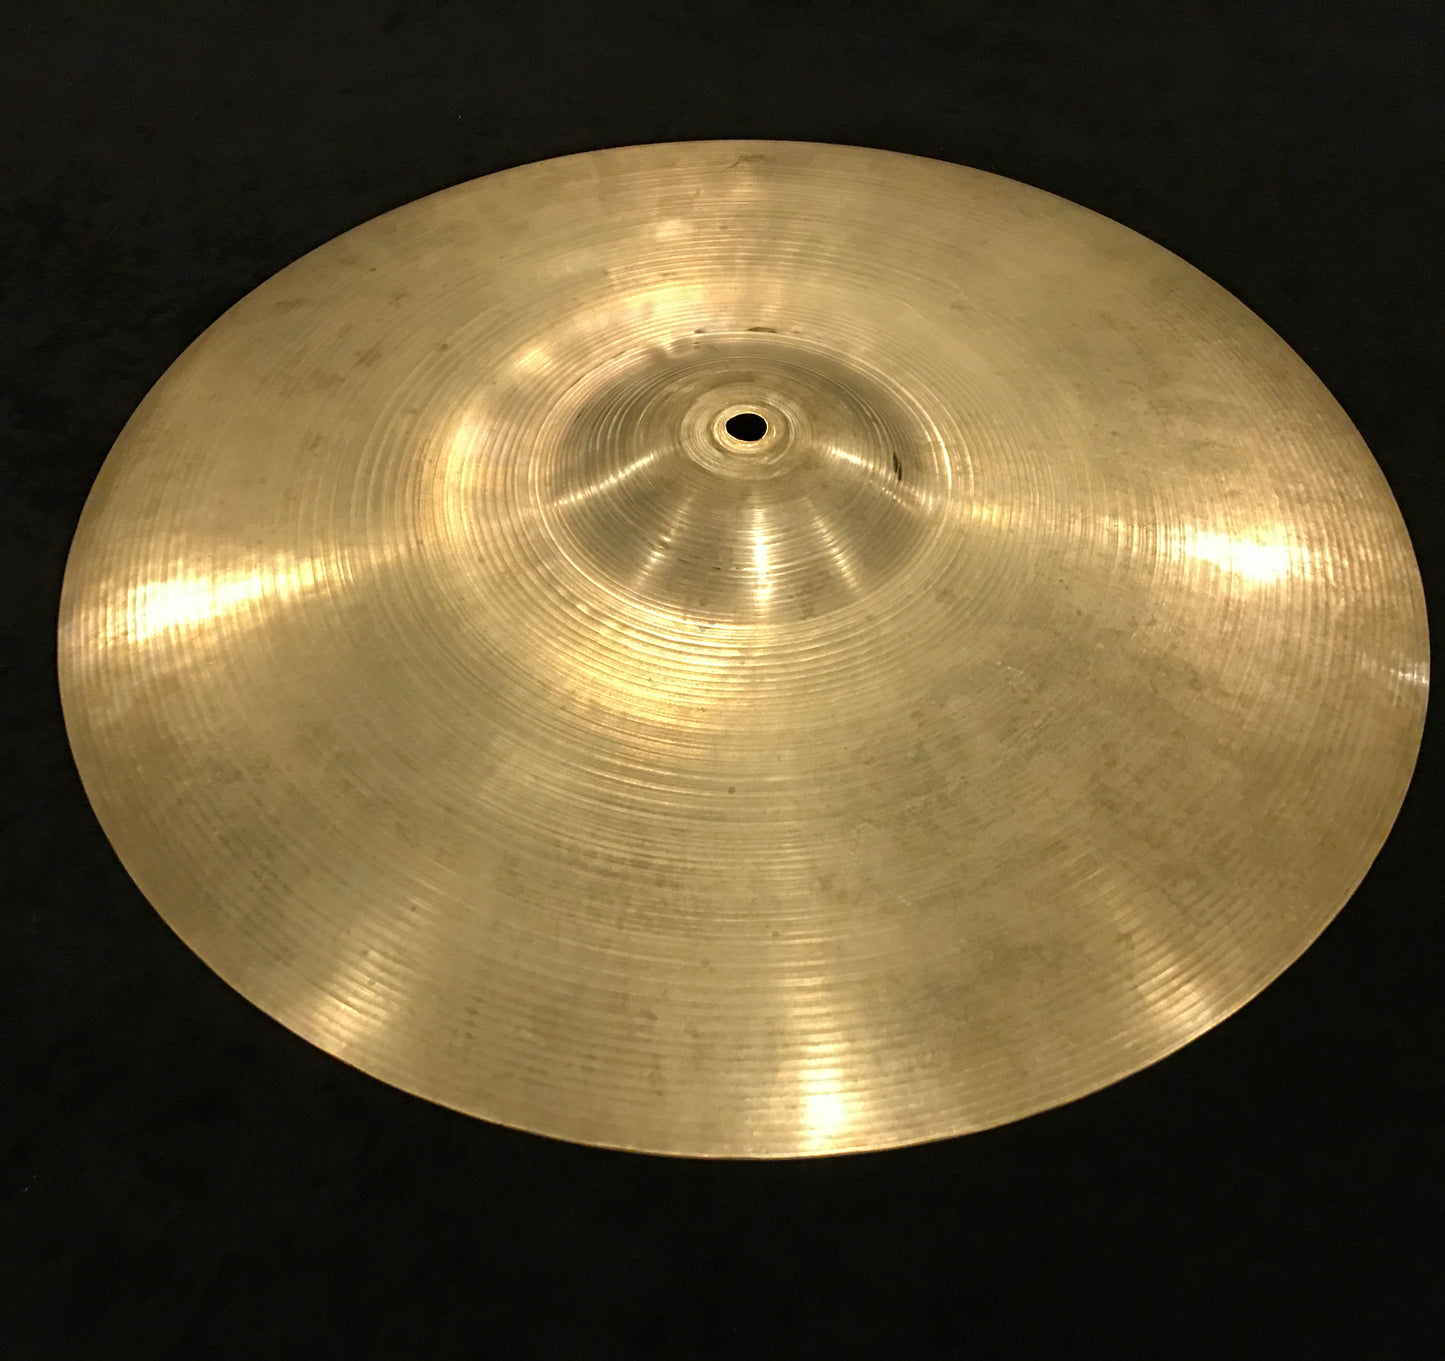 18" Zildjian 1950's Crash Ride Cymbal Great Weight 1341 grams  #601